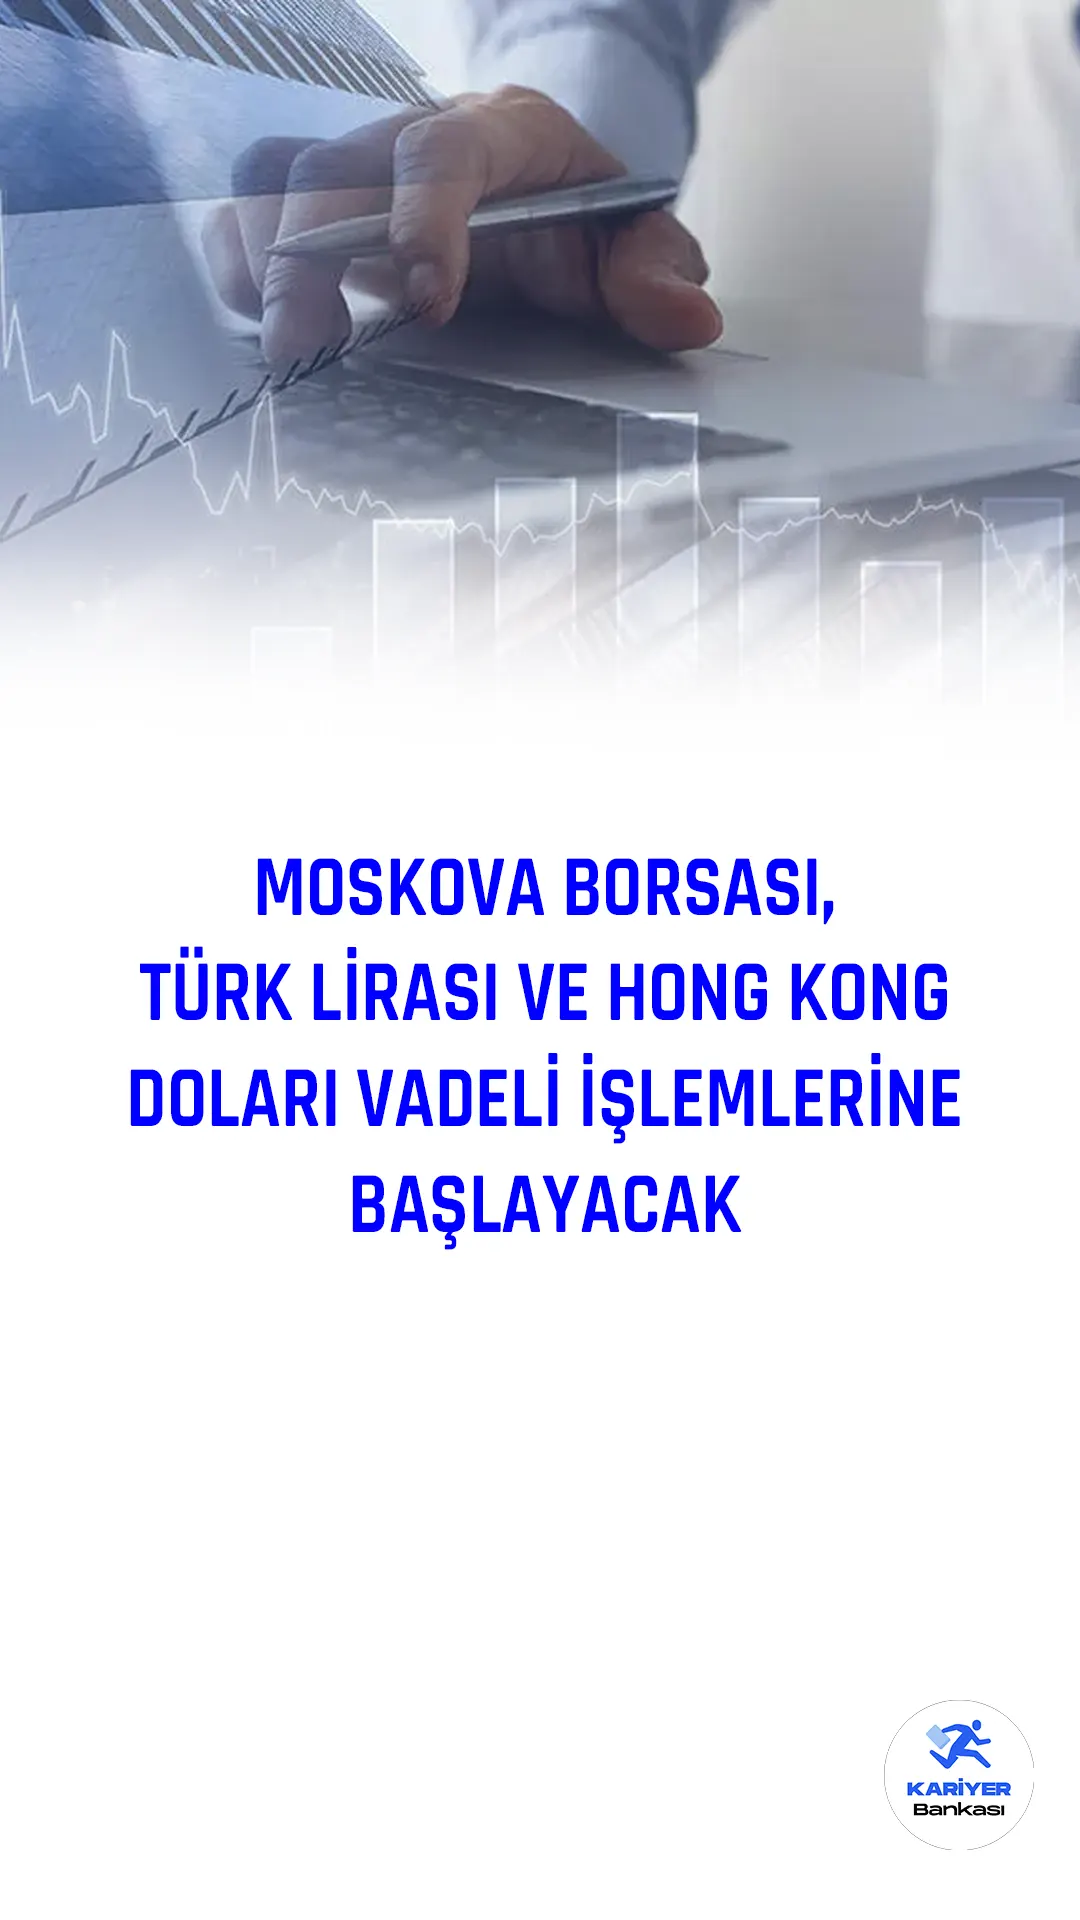 Moskova Borsası (MOEX), 1 Mart'tan itibaren Türk lirası-Rus rublesi ve Hong Kong doları-Rus rublesi cinsinden vadeli işlemlere başlayacak.